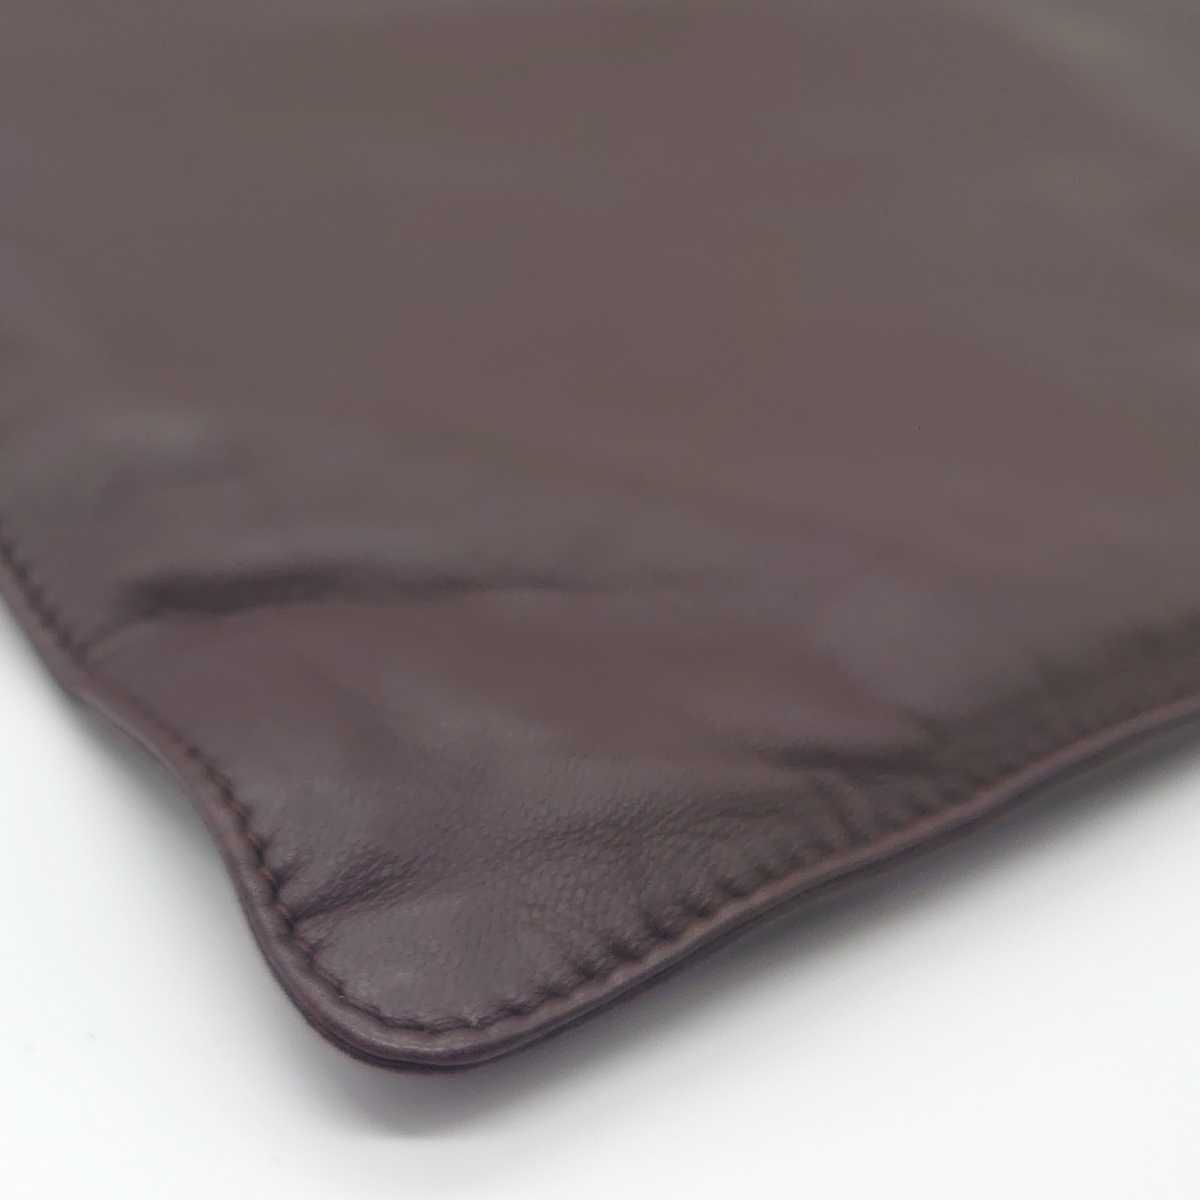 LOEWE Loewe napa leather tote bag handbag dark brown original leather plain simple brand character storage bag Vintage dn-22x1146